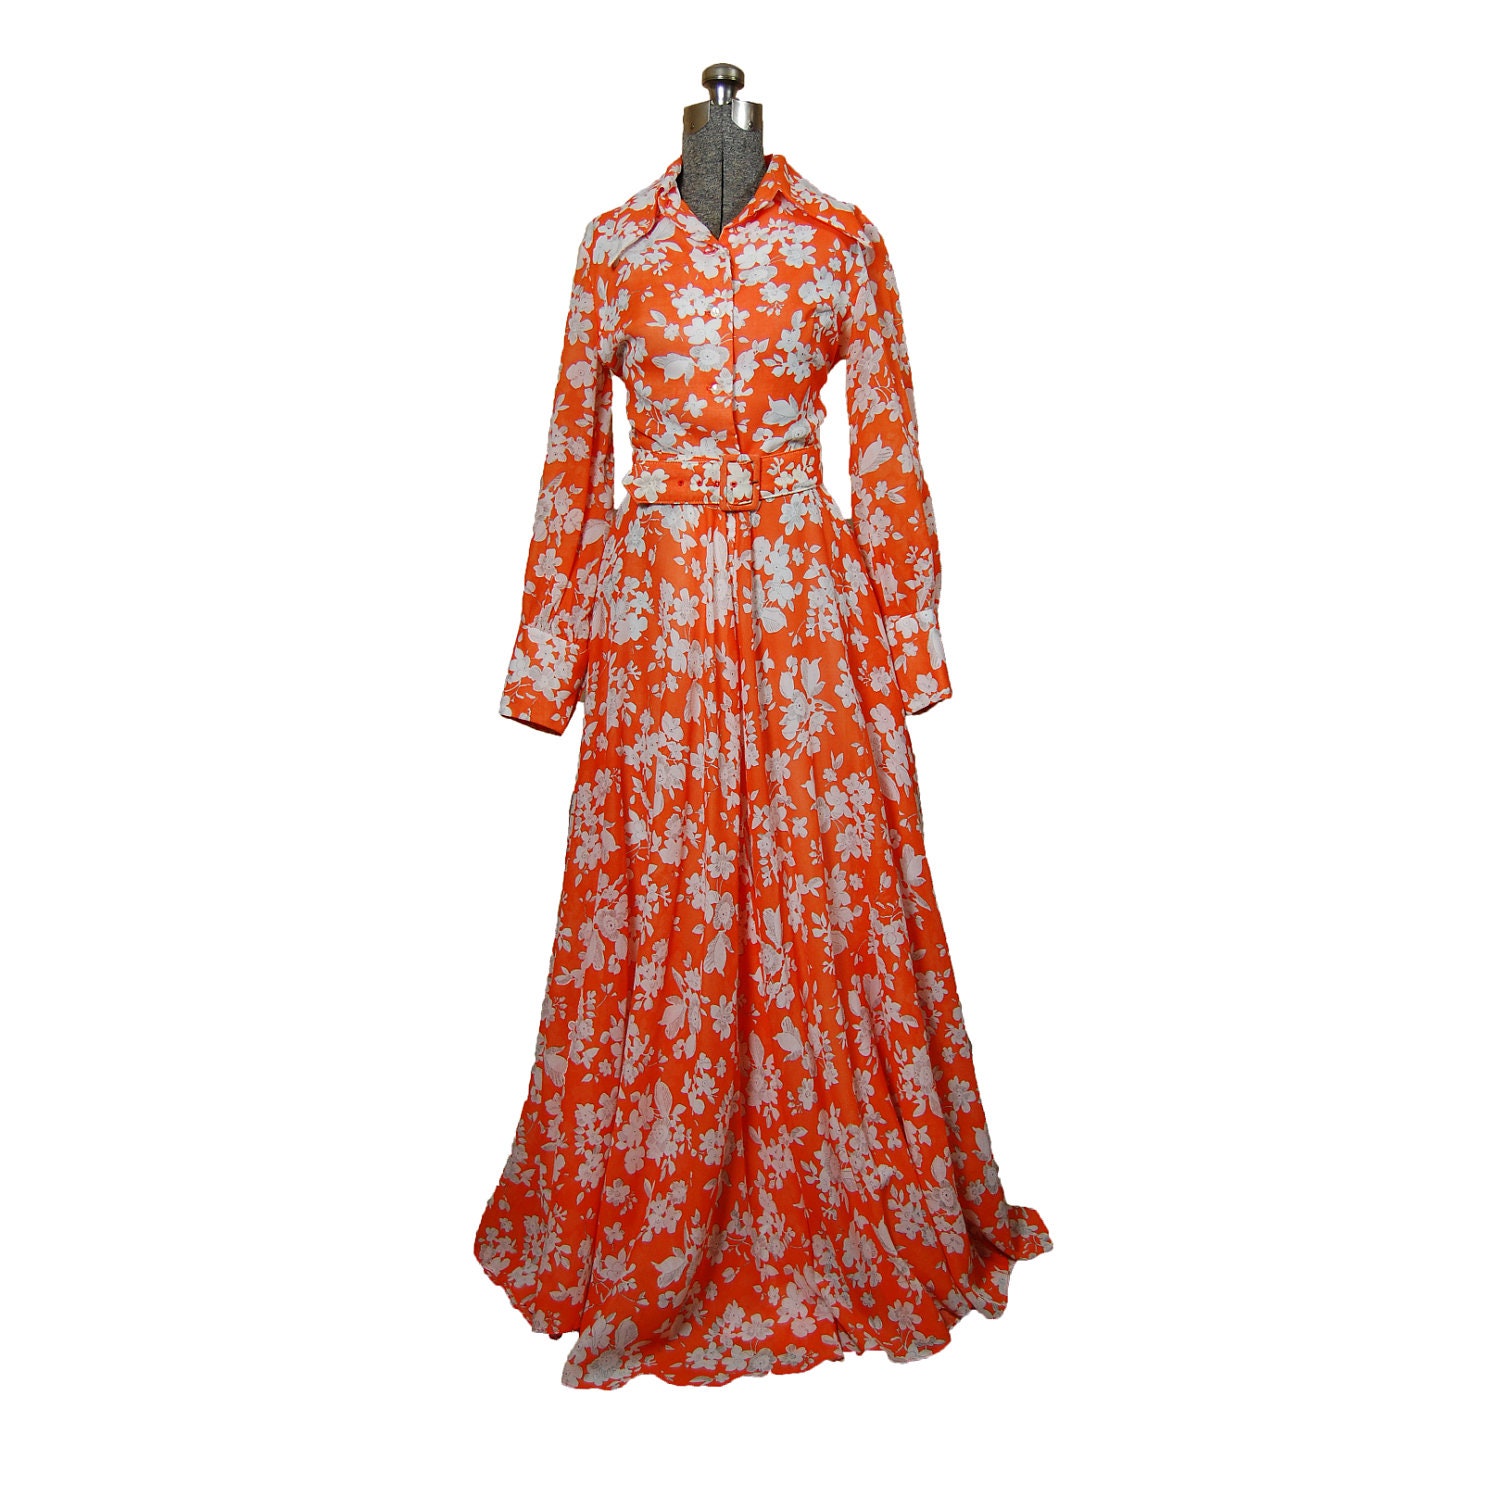 Vintage 1970s Dress Orange Floral Full by dejavintageboutique